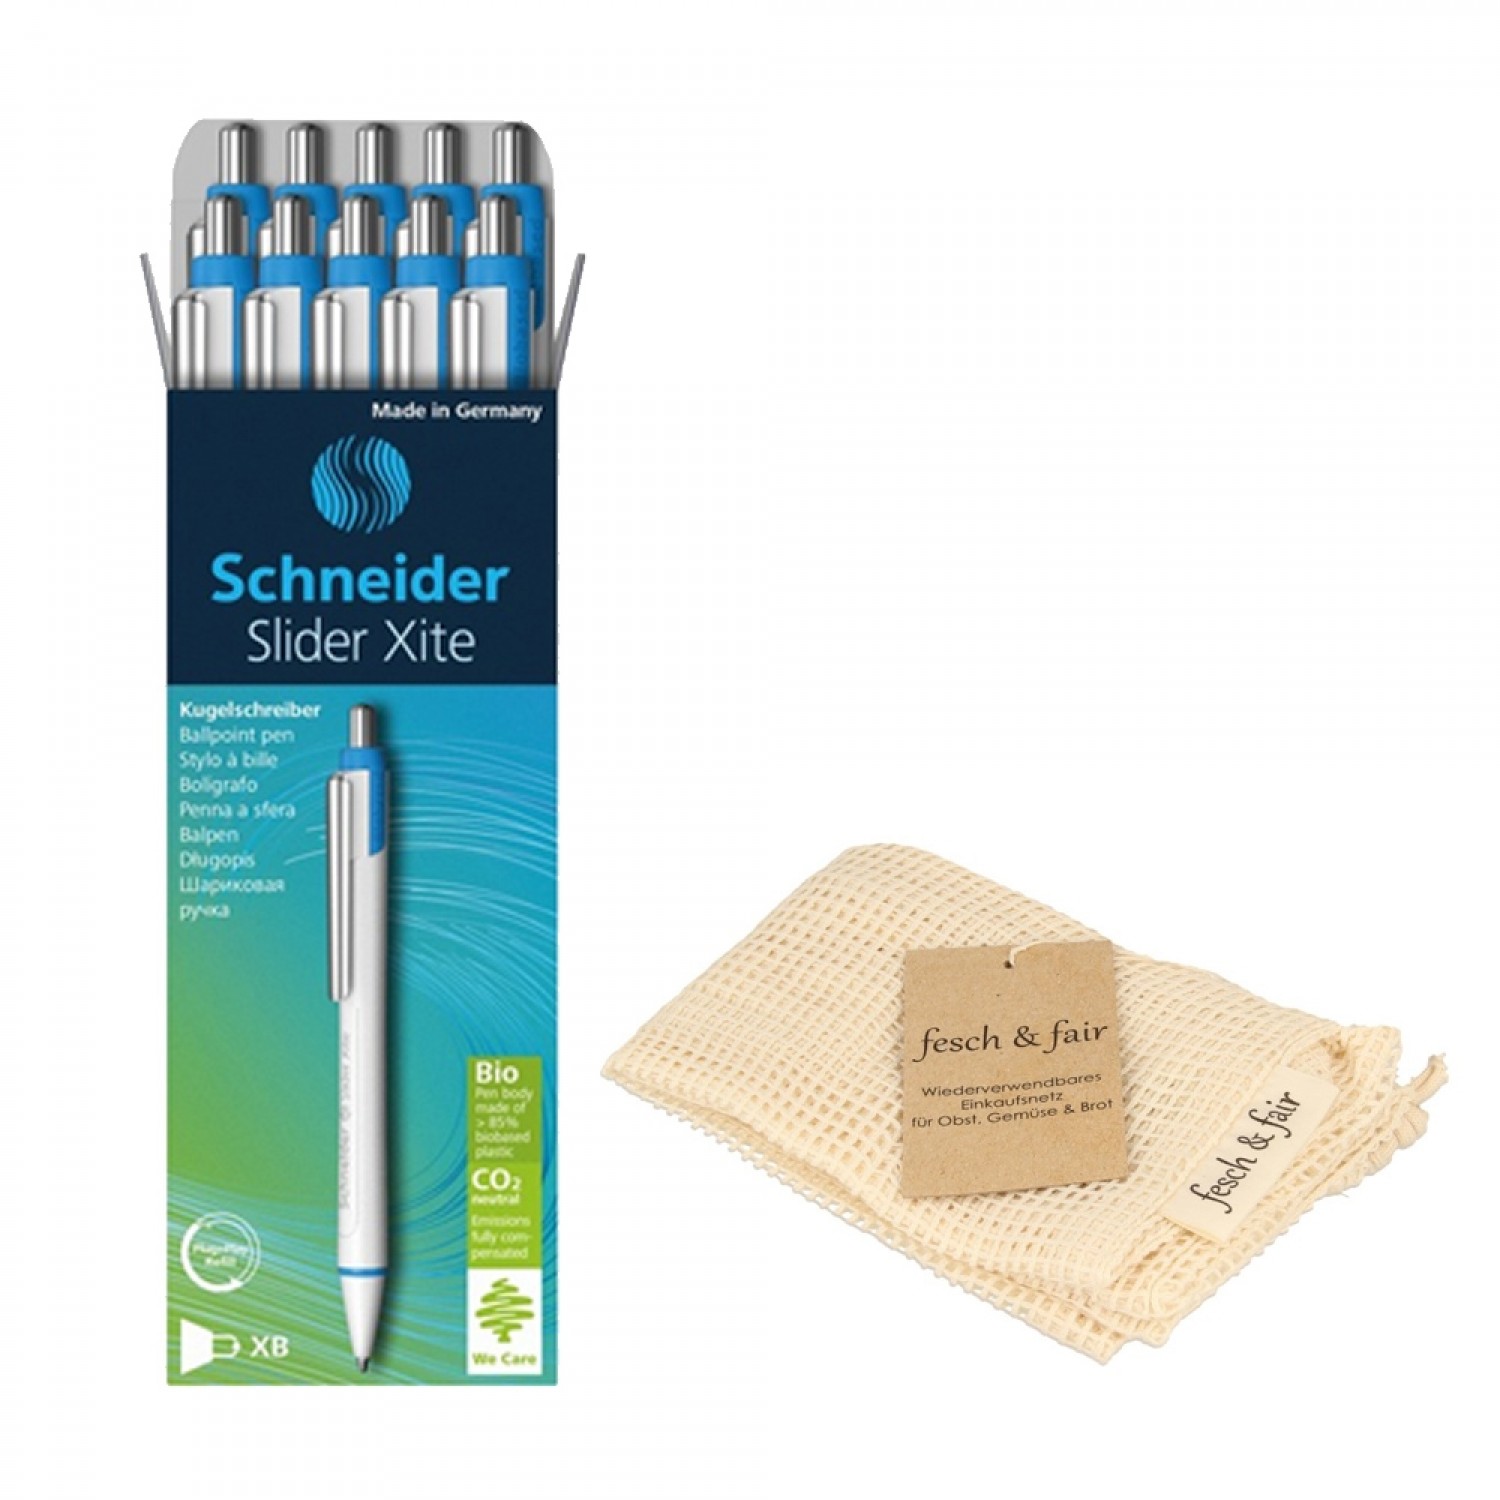 10 Ballpoint Pens Schneider Slider Xite in eco cotton string bag